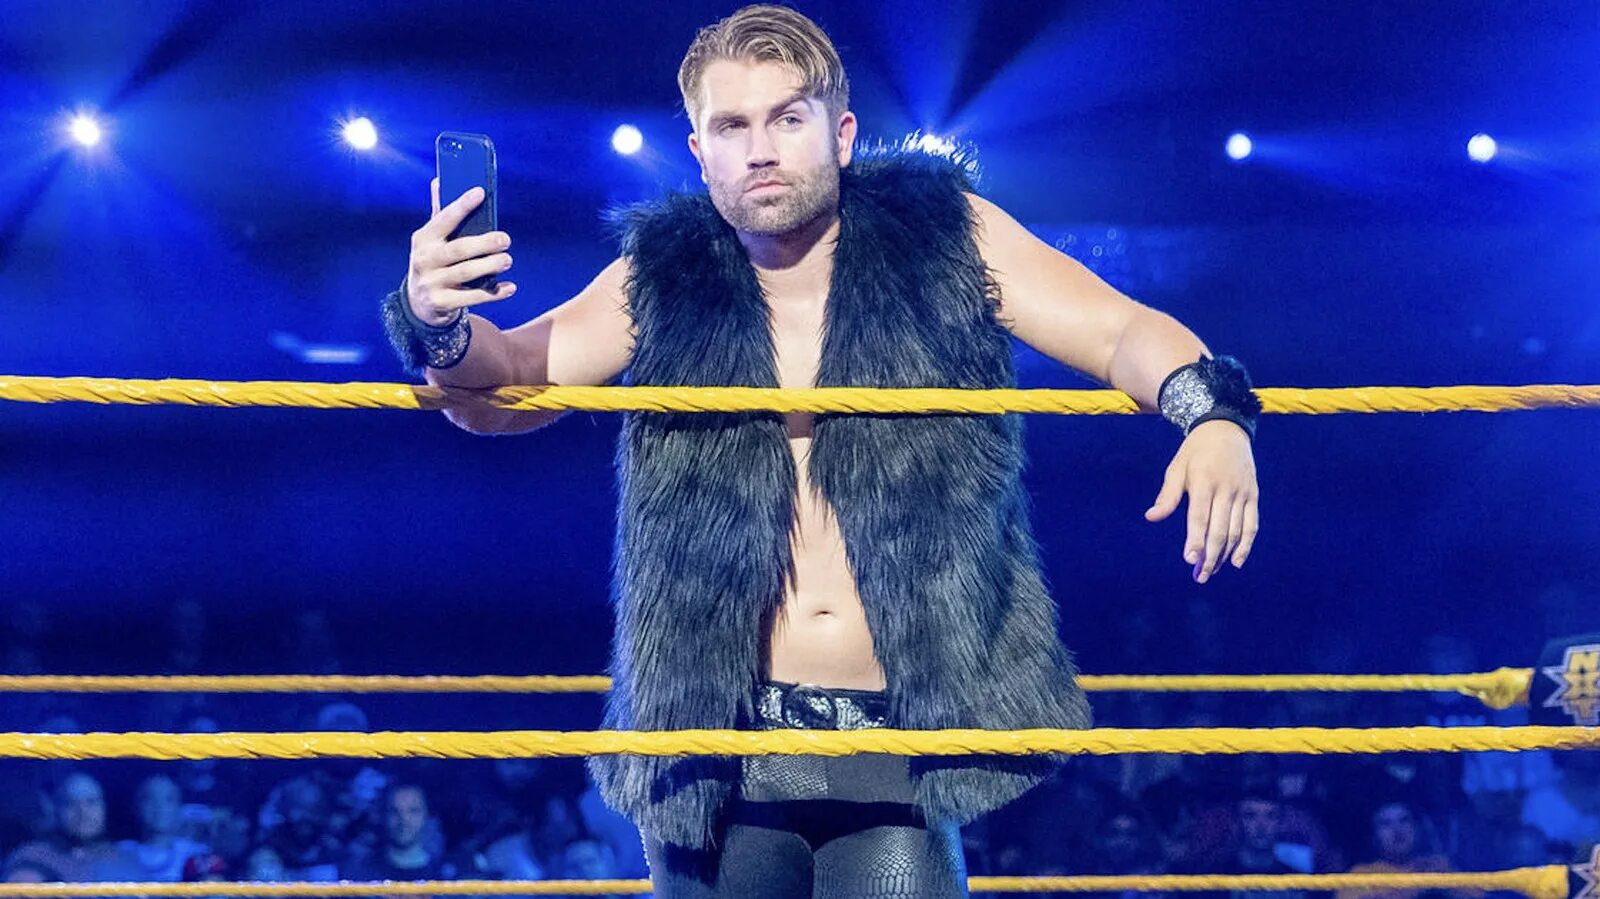 WWE NXT телепередача. C Breeze Рестлер.